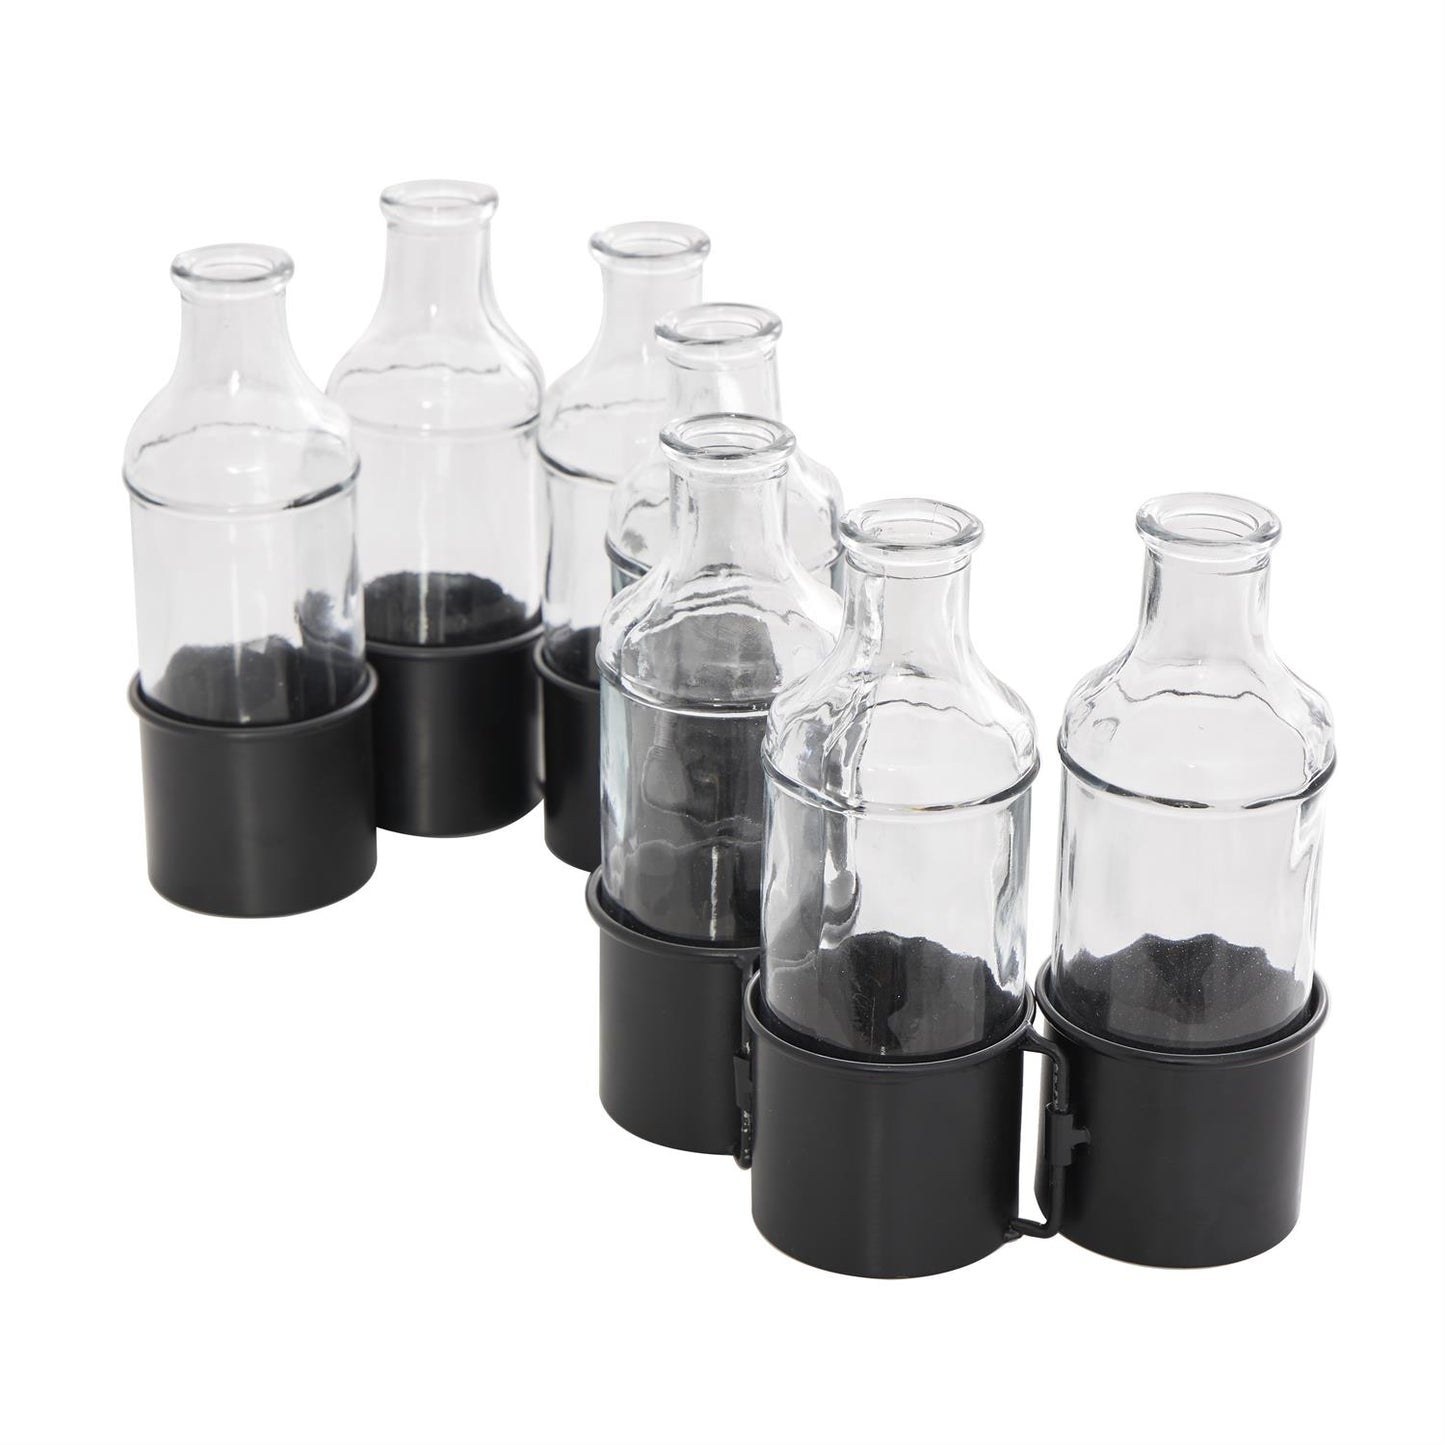 Black Metal Adjustable Bottle Vase